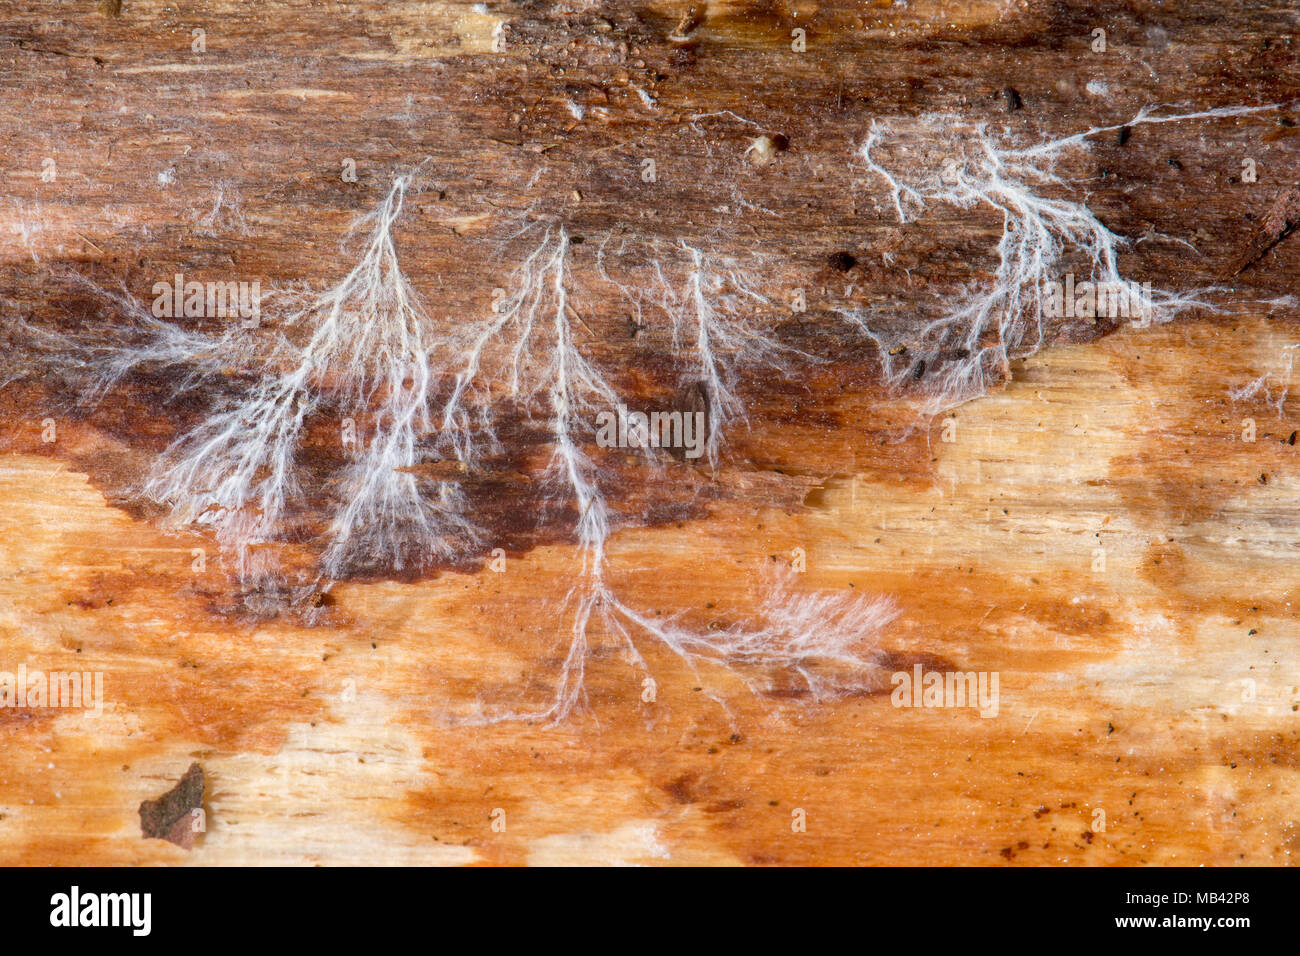 Pilzmycel auf totem Holz. Masse der Verzweigung der vegetativen Teil des Pilzes durch Entfernen der Rinde am Toten Nadelholz ausgesetzt anmelden Stockfoto